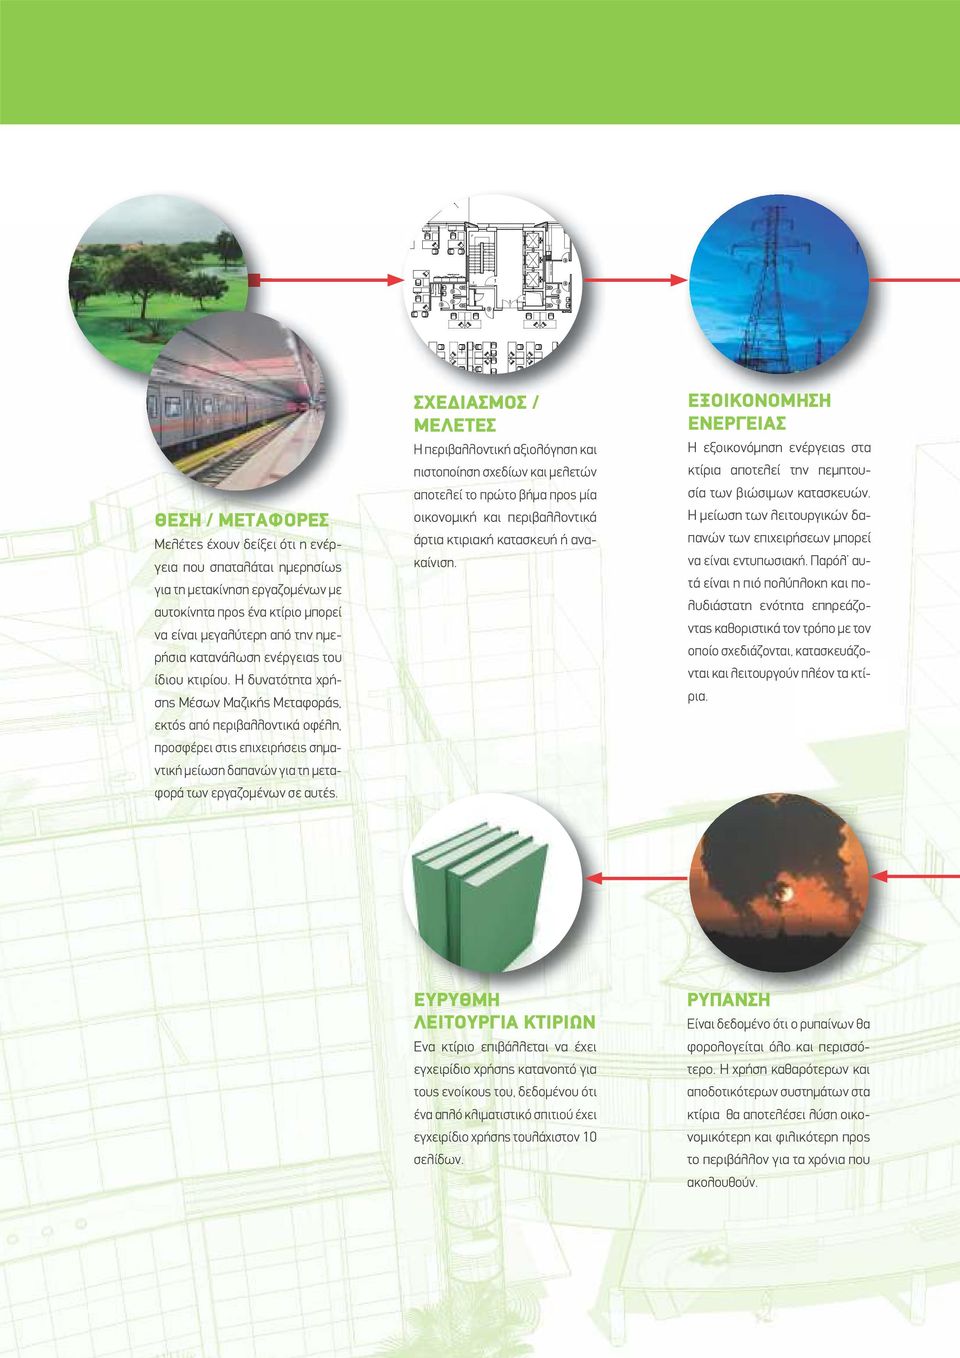 ΣΧΕ ΙΑΣΜΟΣ / ΜΕΛΕΤΕΣ Η περιβαλλοντική αξιολόγηση και πιστοποίηση σχεδίων και µελετών αποτελεί το πρώτο βήµα προς µία οικονοµική και περιβαλλοντικά άρτια κτιριακή κατασκευή ή ανακαίνιση.